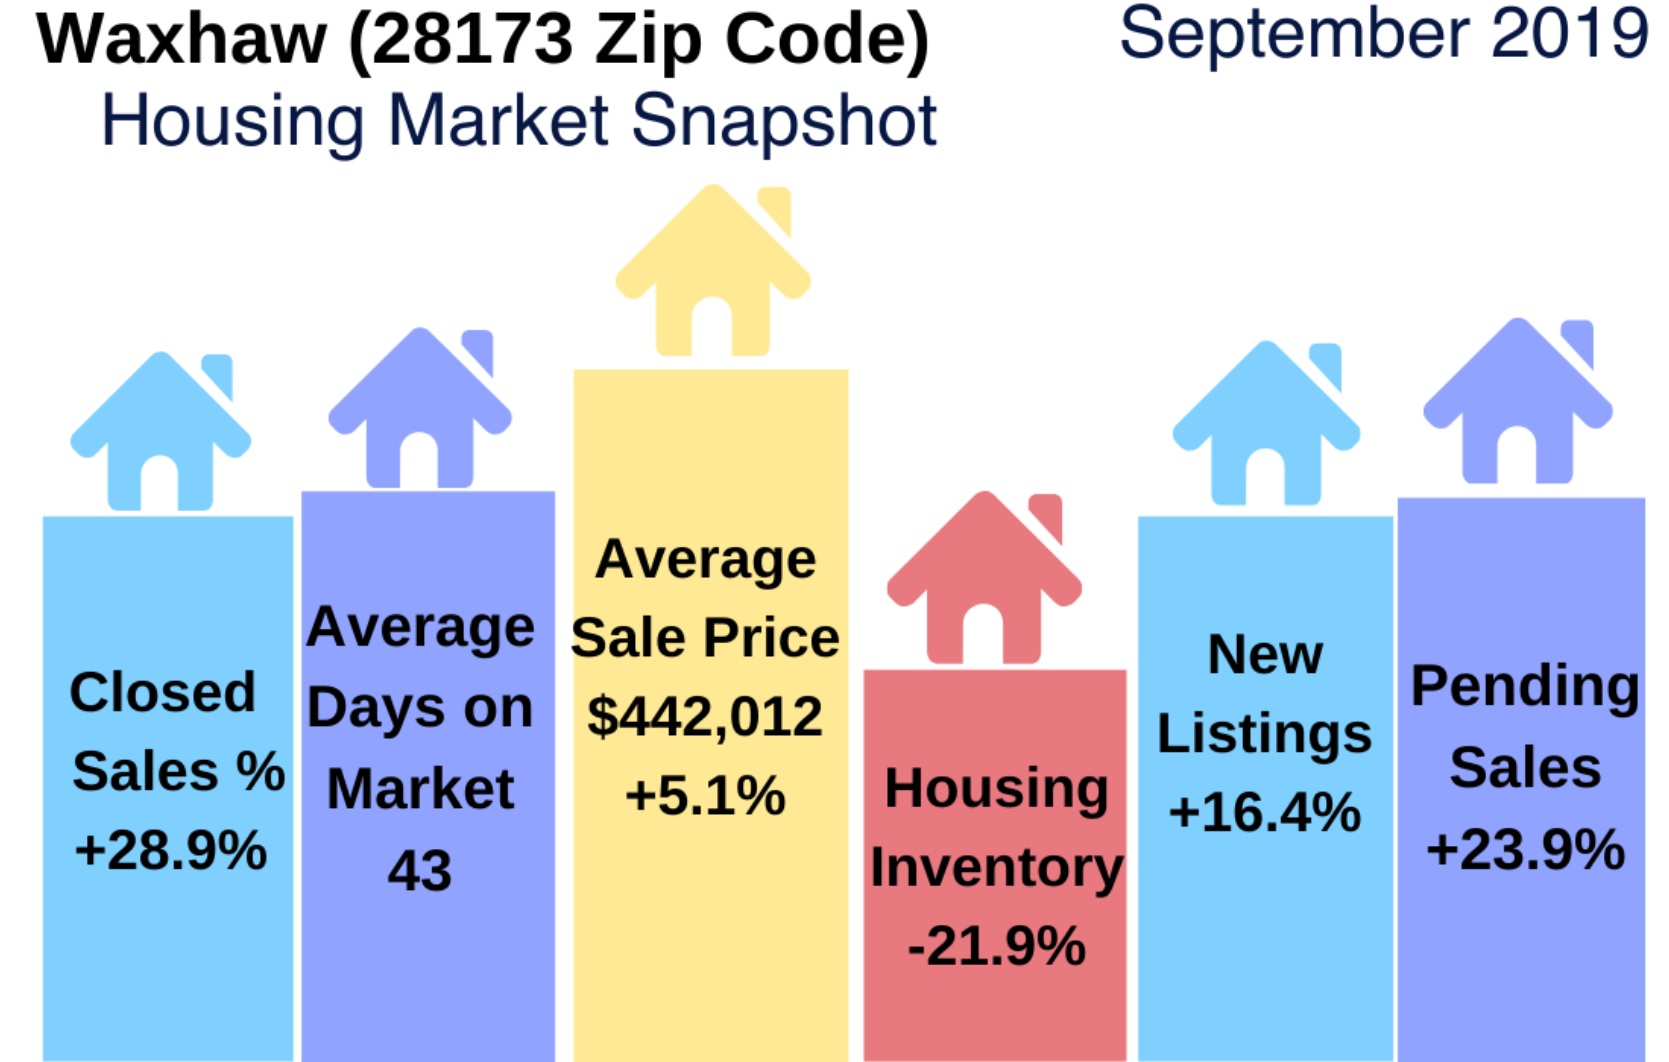 Waxhaw (28173 Zip Code) Real Estate Report: September 2019